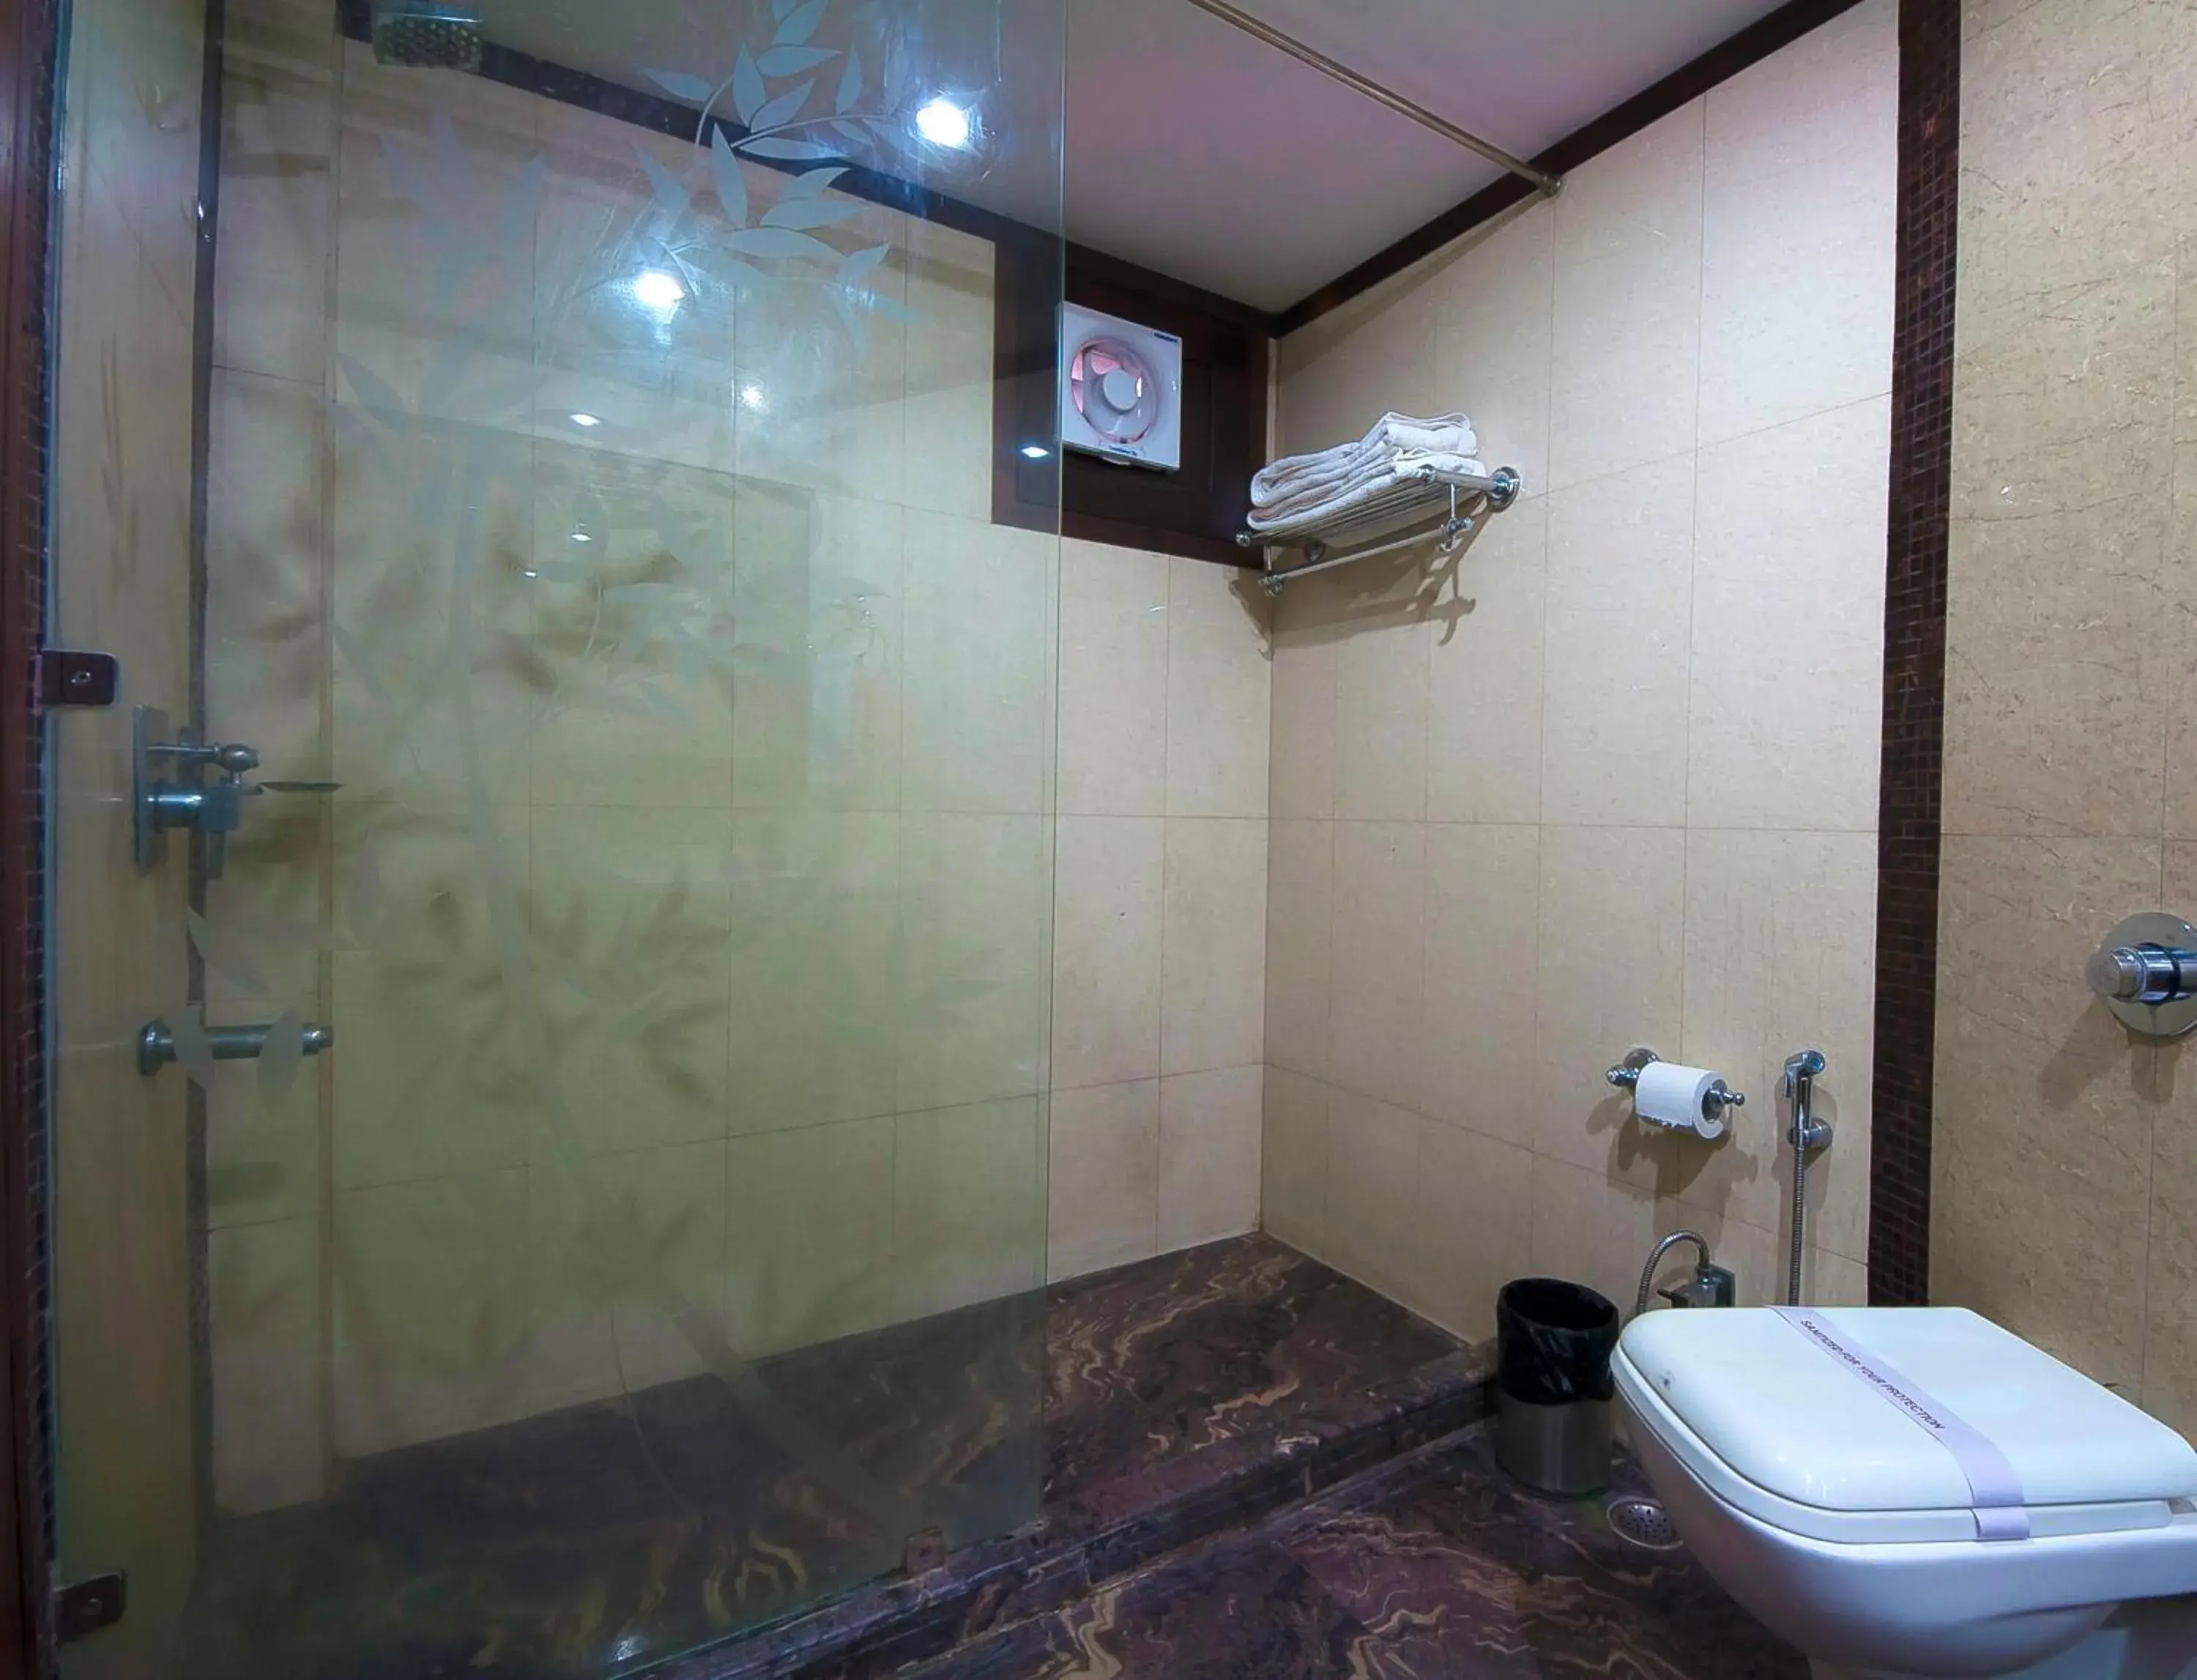 Shower, Bathroom in Siris 18 Hotel Gurgaon